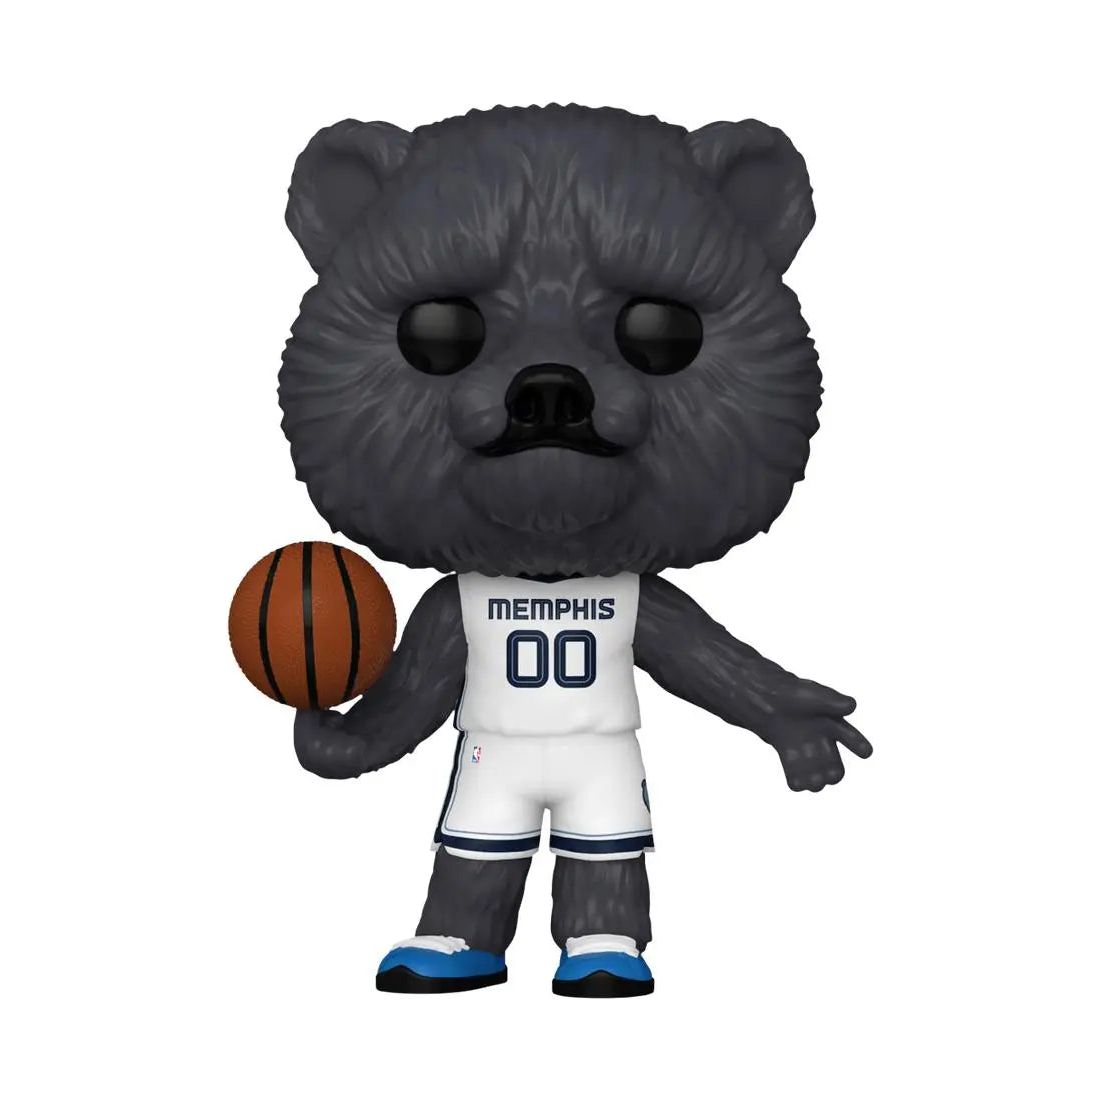 Funko Pop! NBA Mascots Memphis Grizzlies 11 Grizz Funko